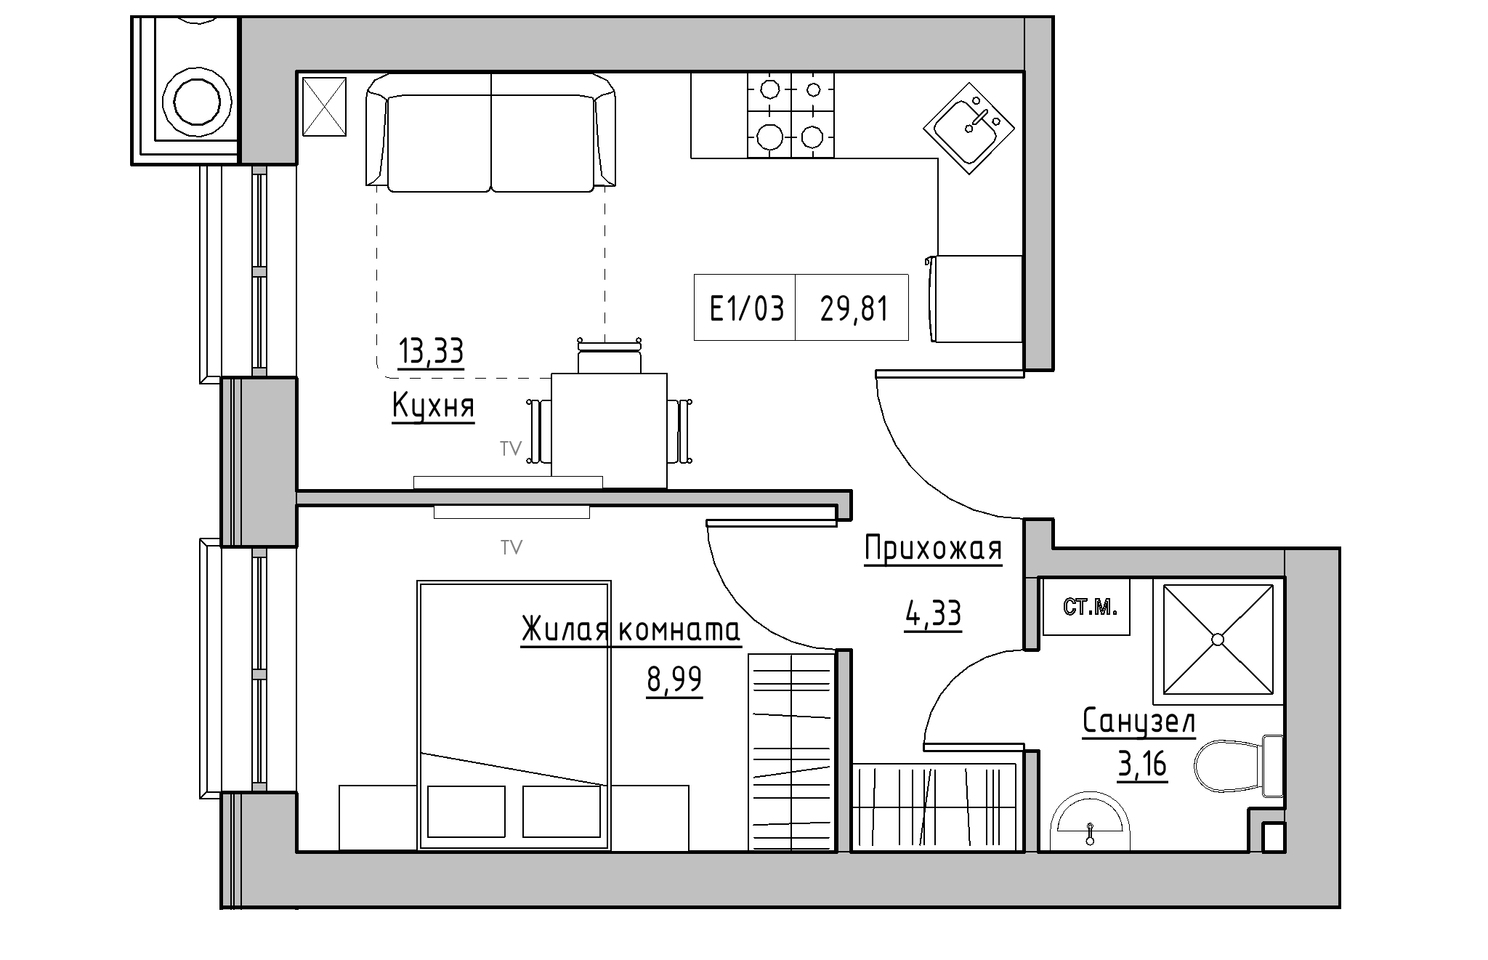 Планировка 1-к квартира площей 29.81м2, KS-010-01/0012.